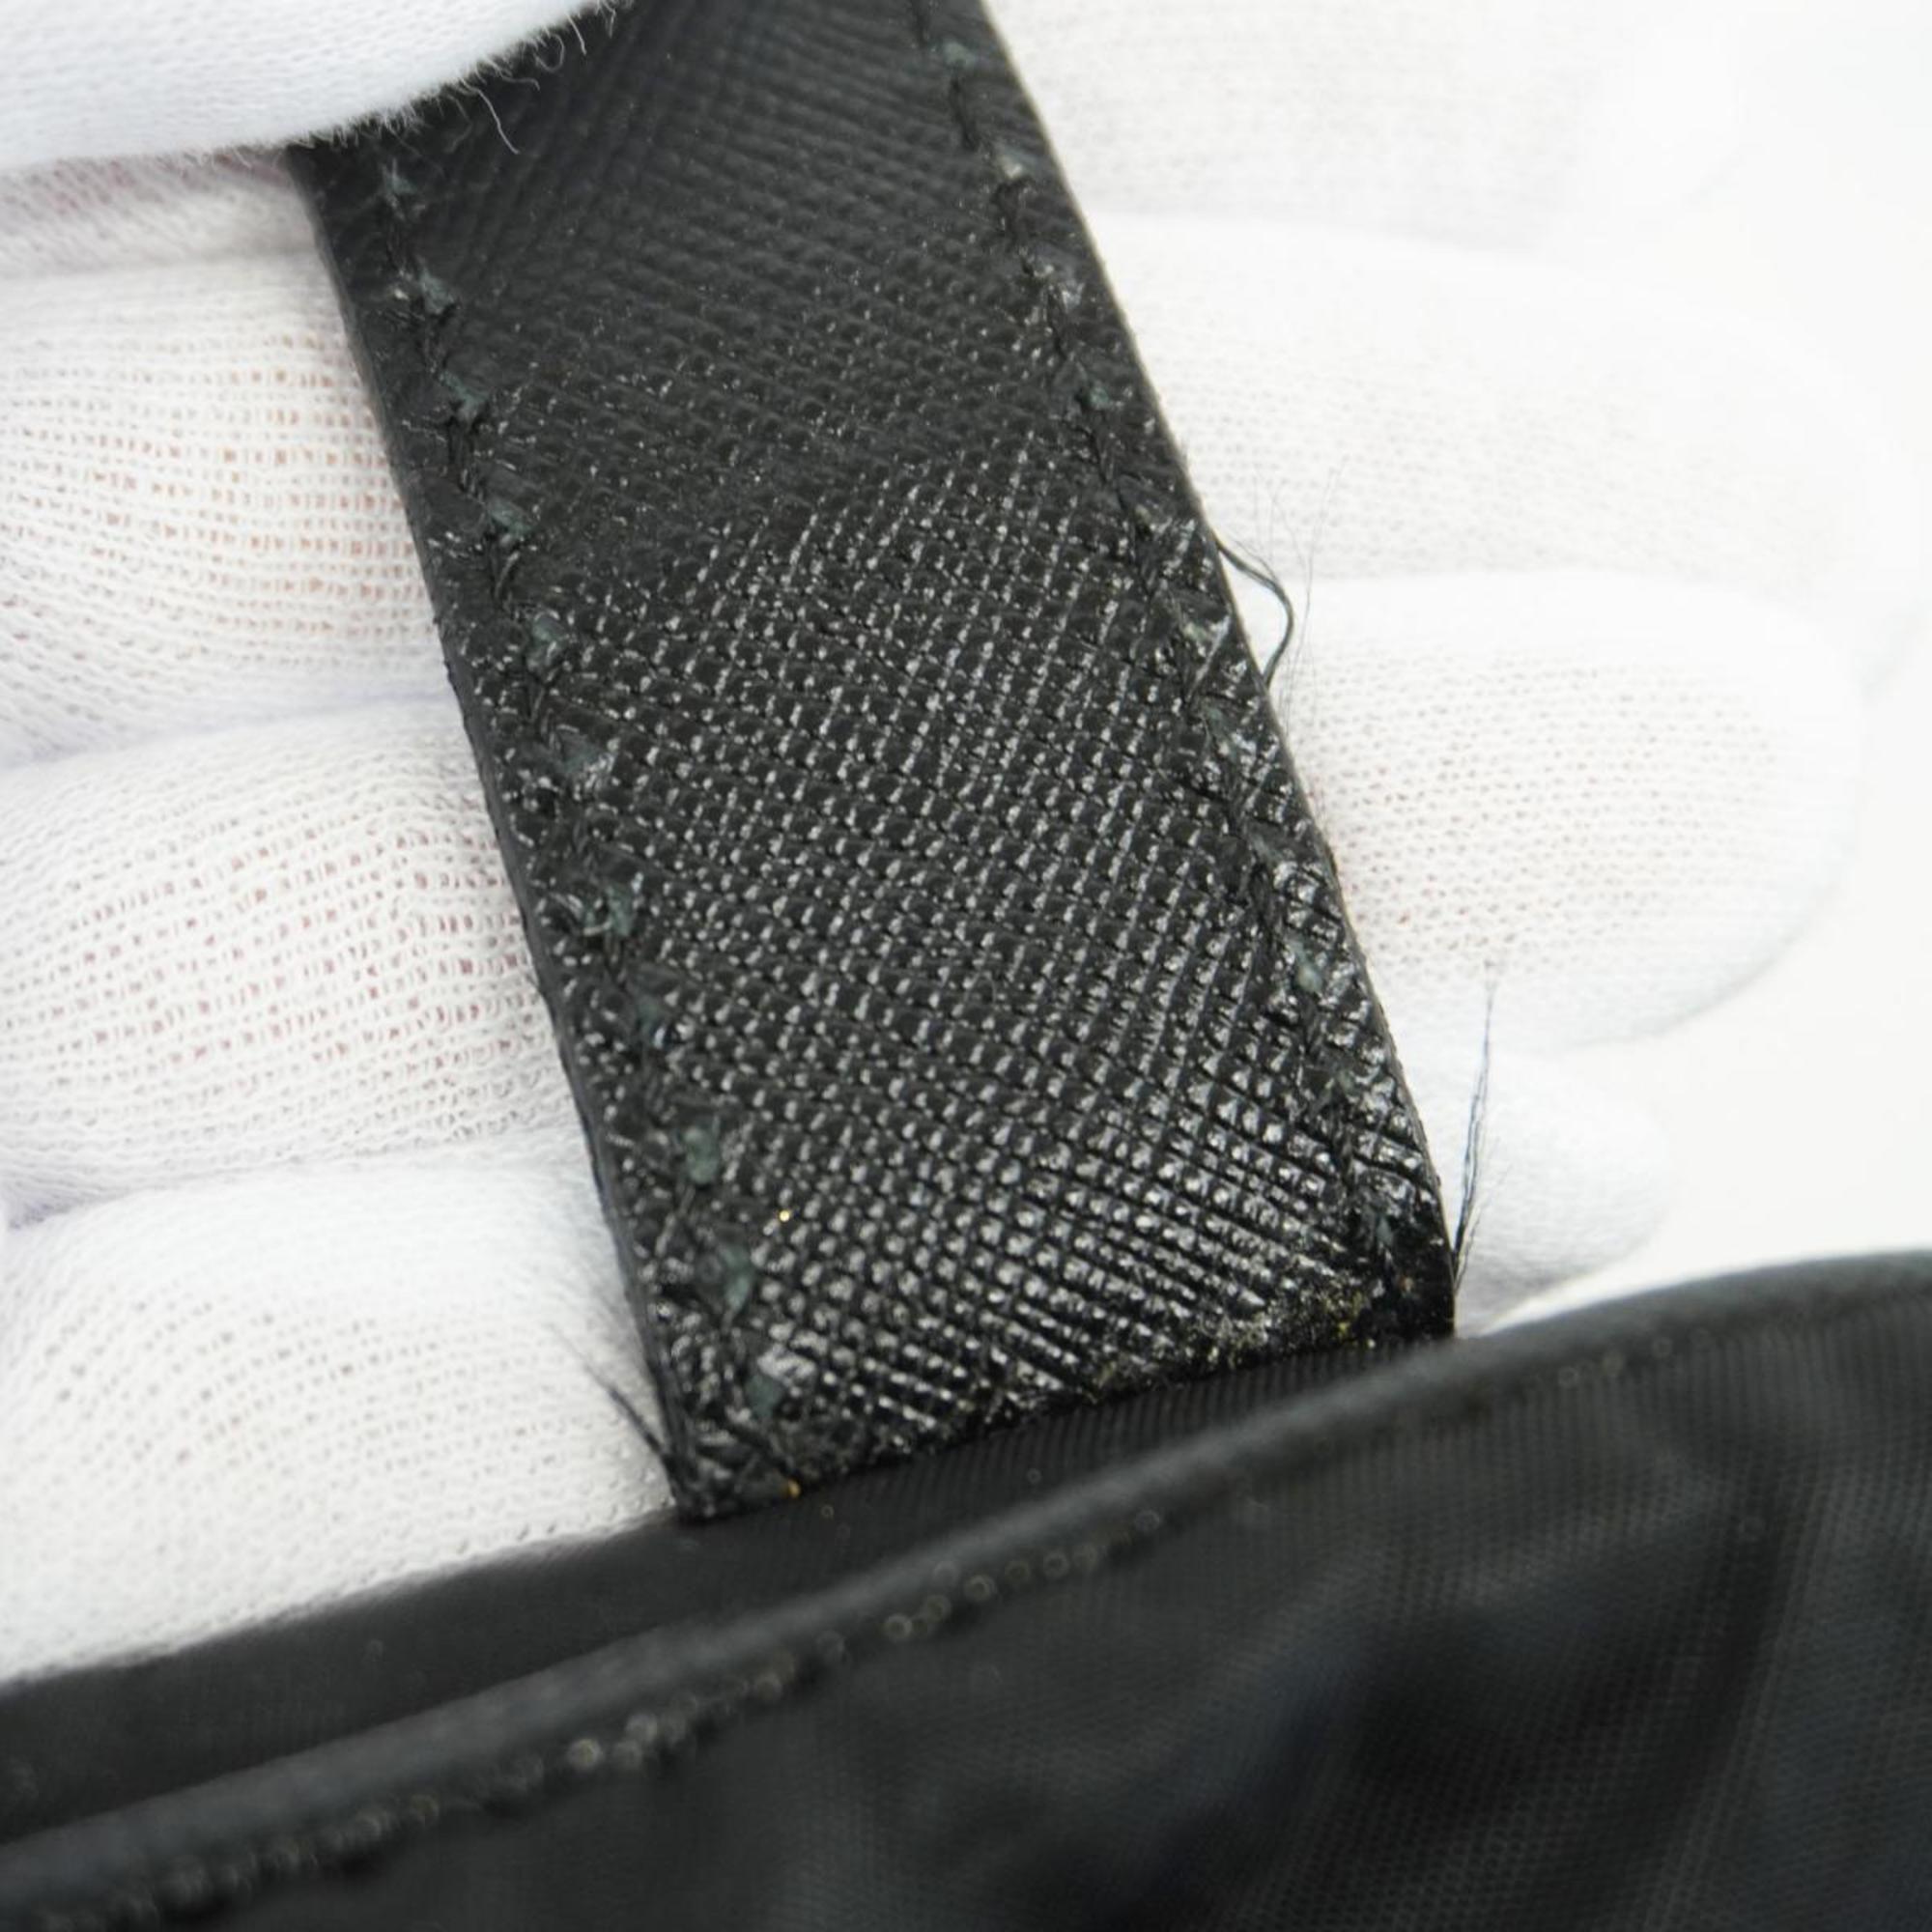 Prada handbag nylon black for men and women